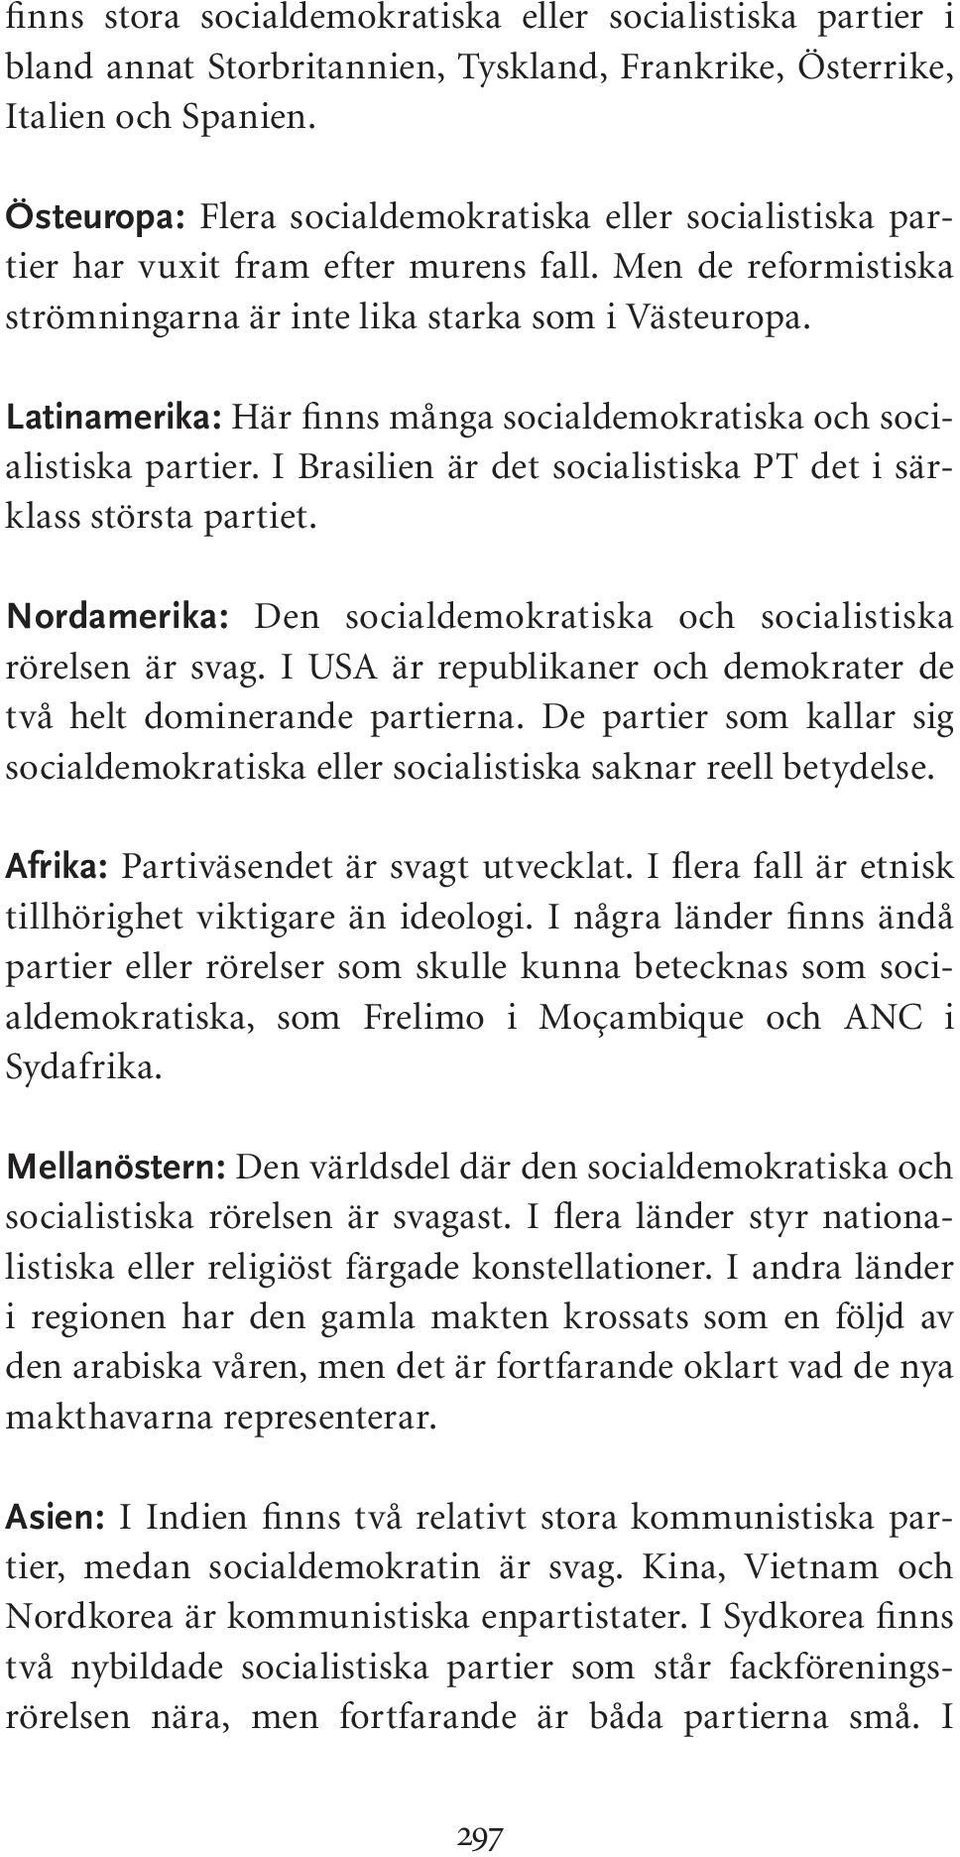 Latinamerika: Här finns många socialdemokratiska och socialistiska partier. I Brasilien är det socialistiska PT det i särklass största partiet.